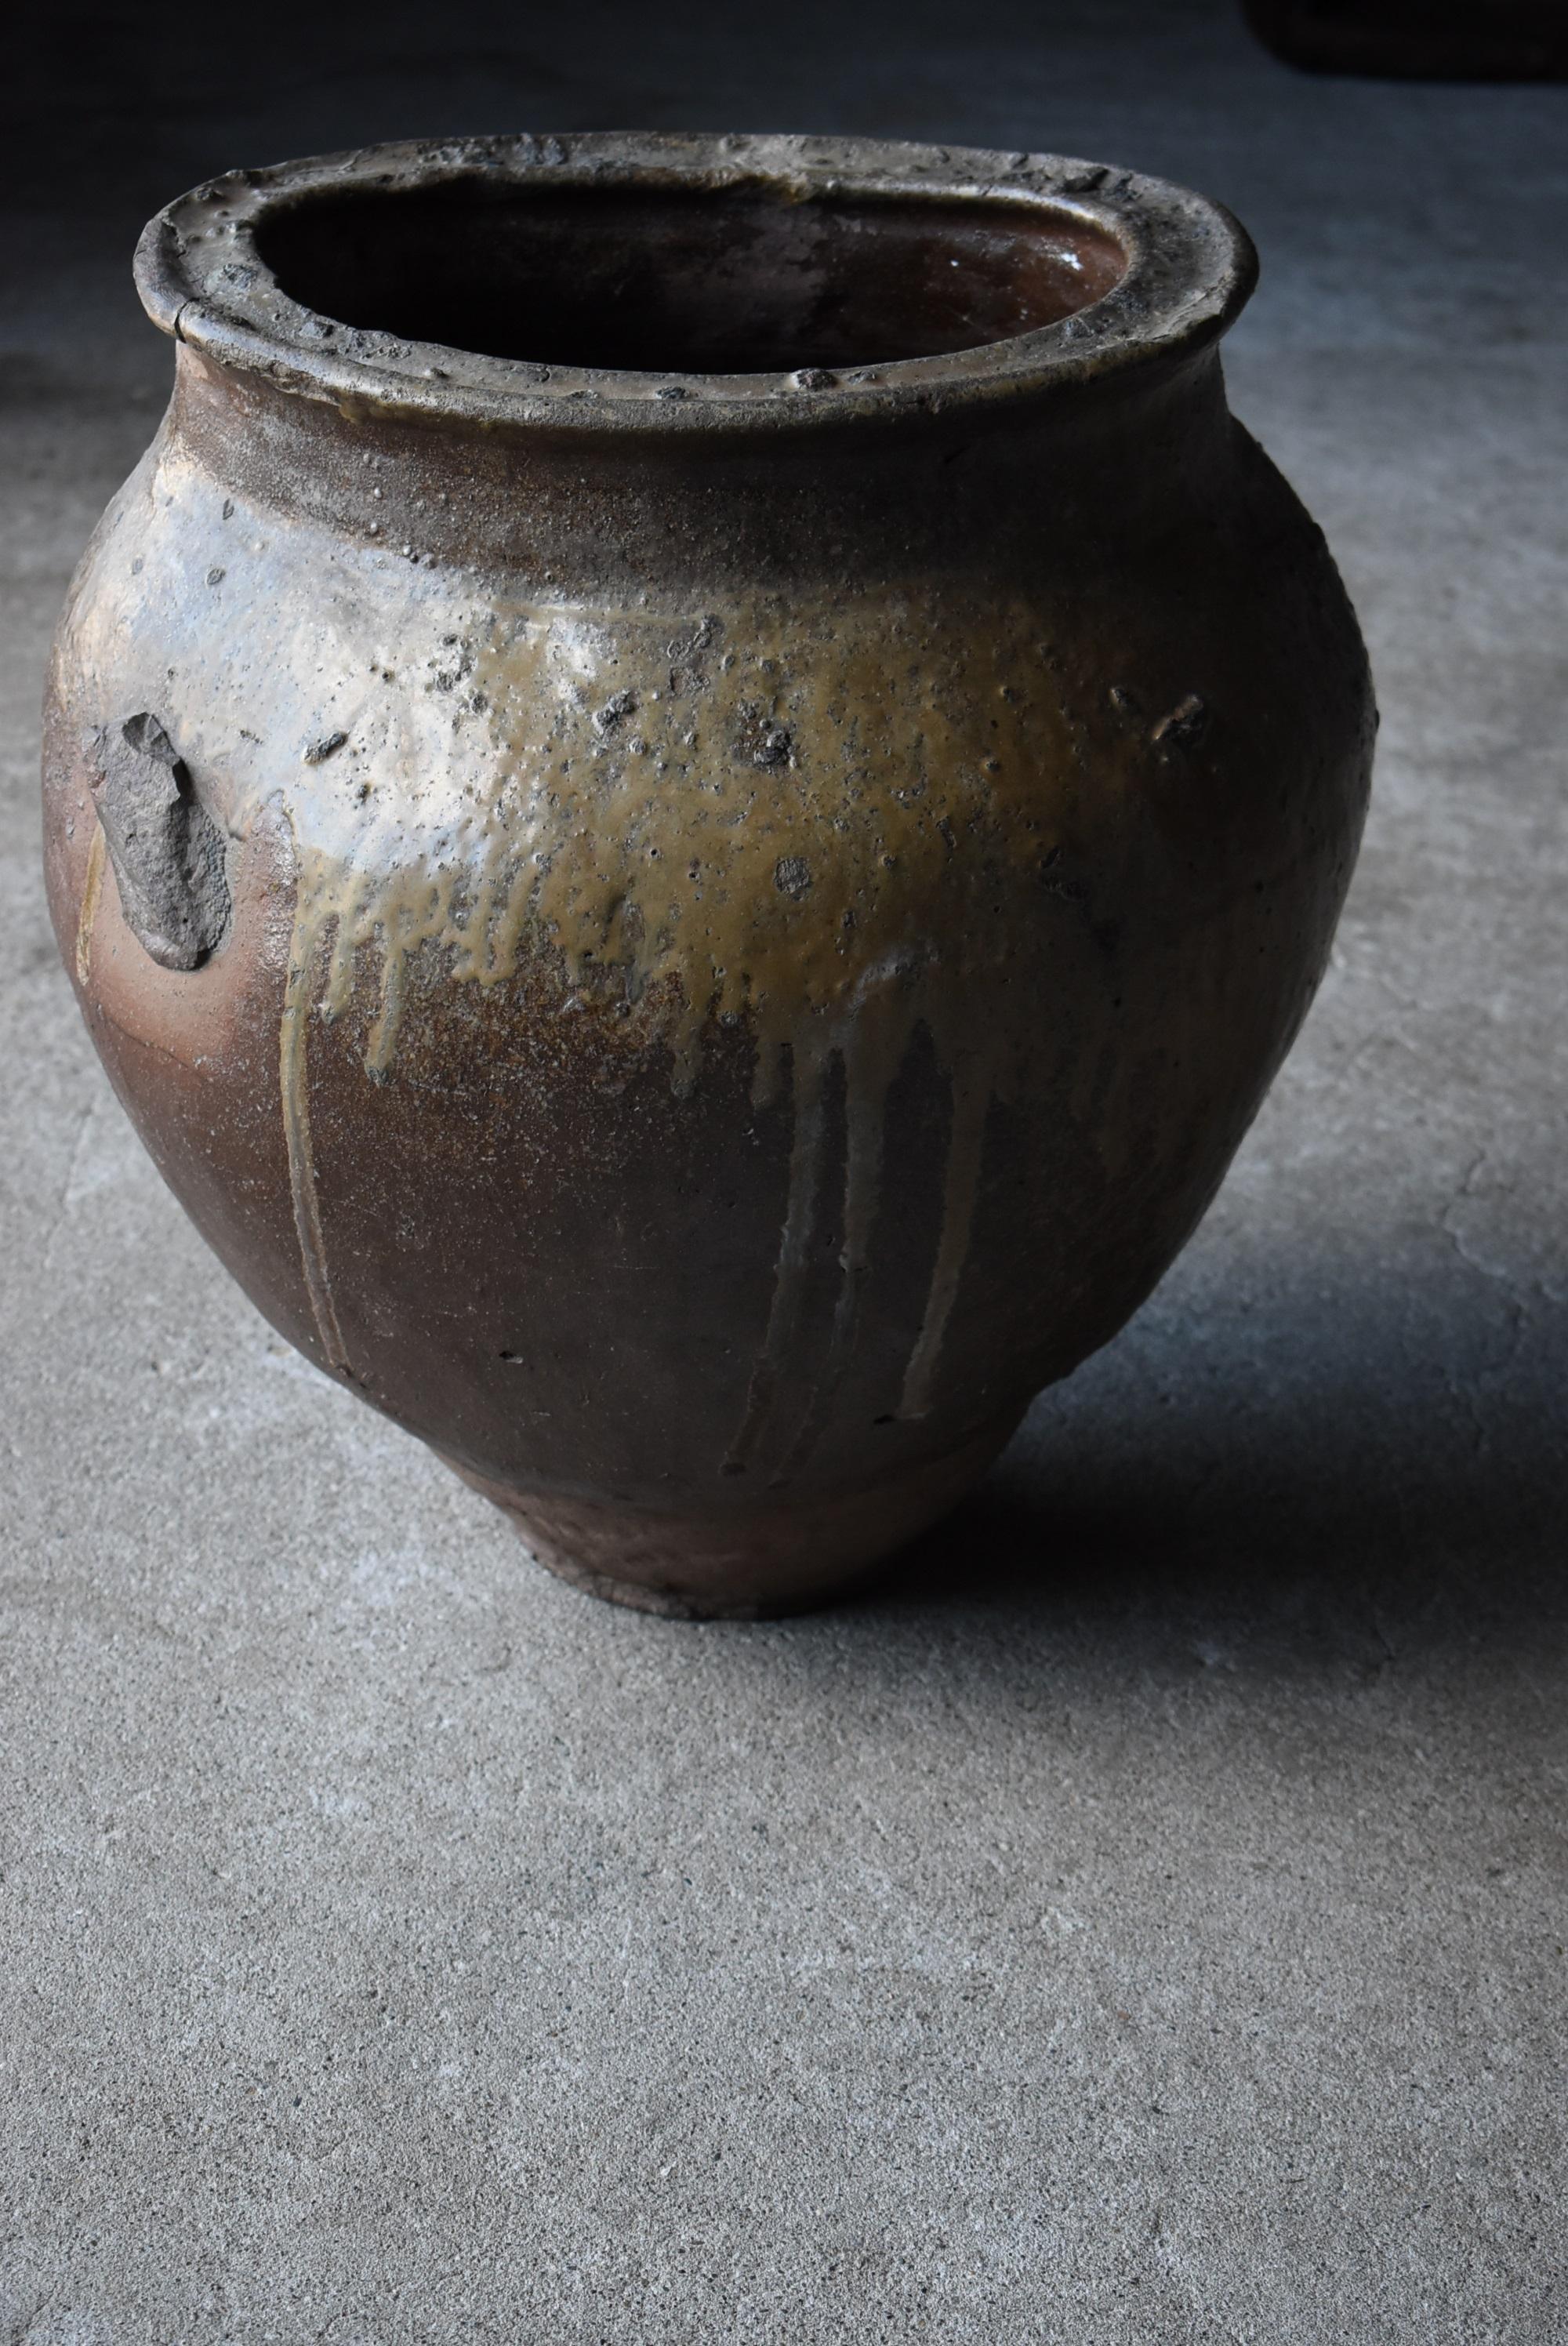 Japanese Antique Pottery 1700s-1800s/Flower Vase Vessel Jar Tsubo Wabisabi 9